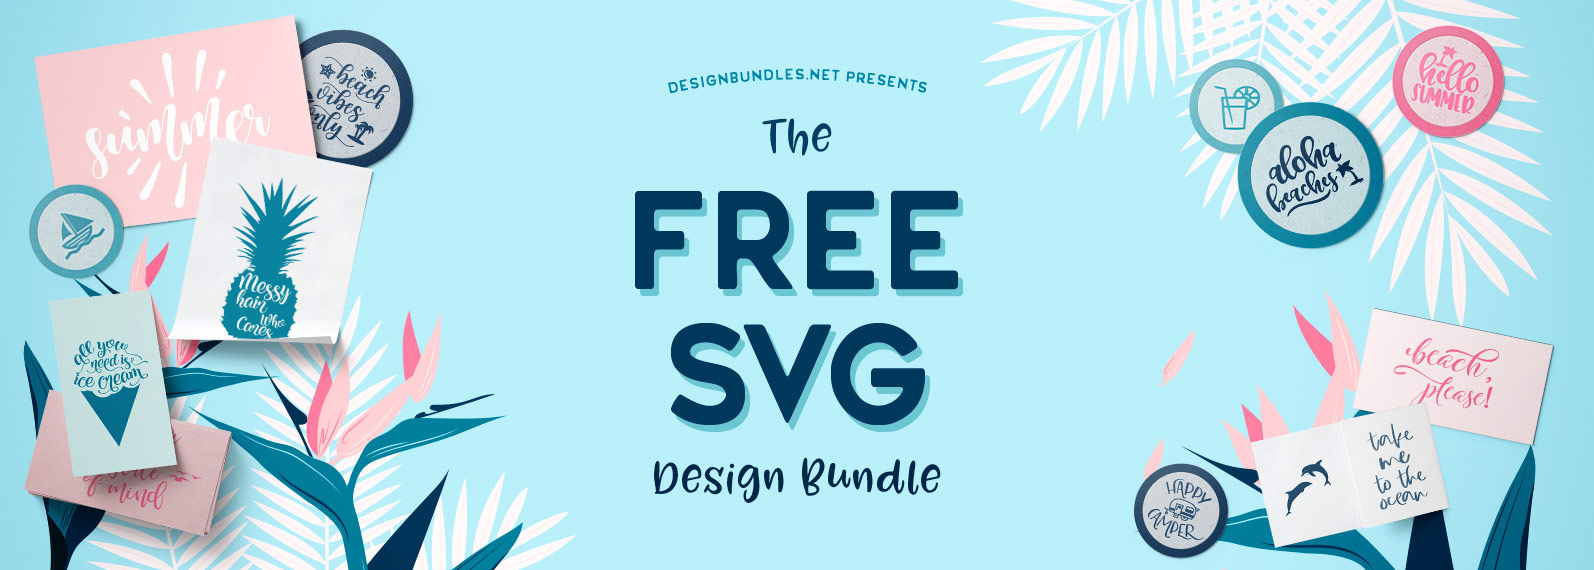 Free Free Sparkol Svg Images Free Download 642 SVG PNG EPS DXF File